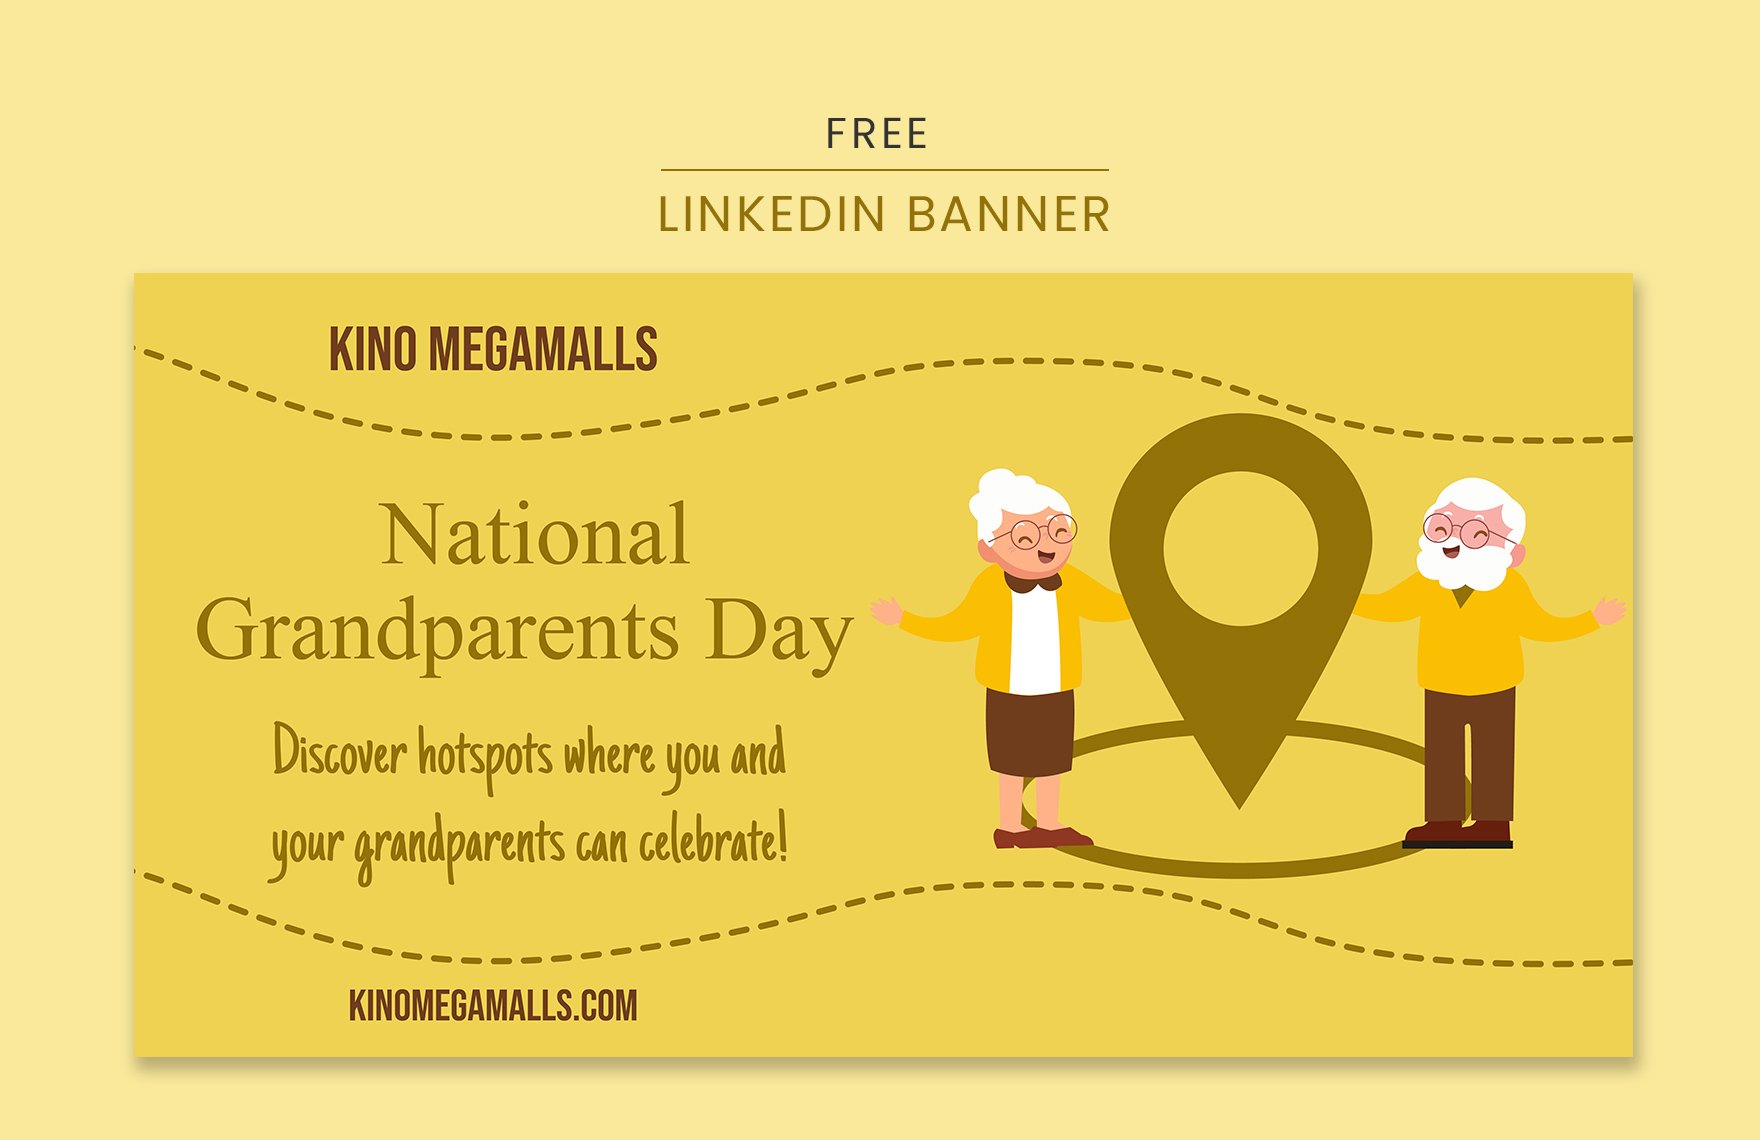 Free National Grandparents Day Linkedin Banner in PDF, Illustrator, SVG, JPEG